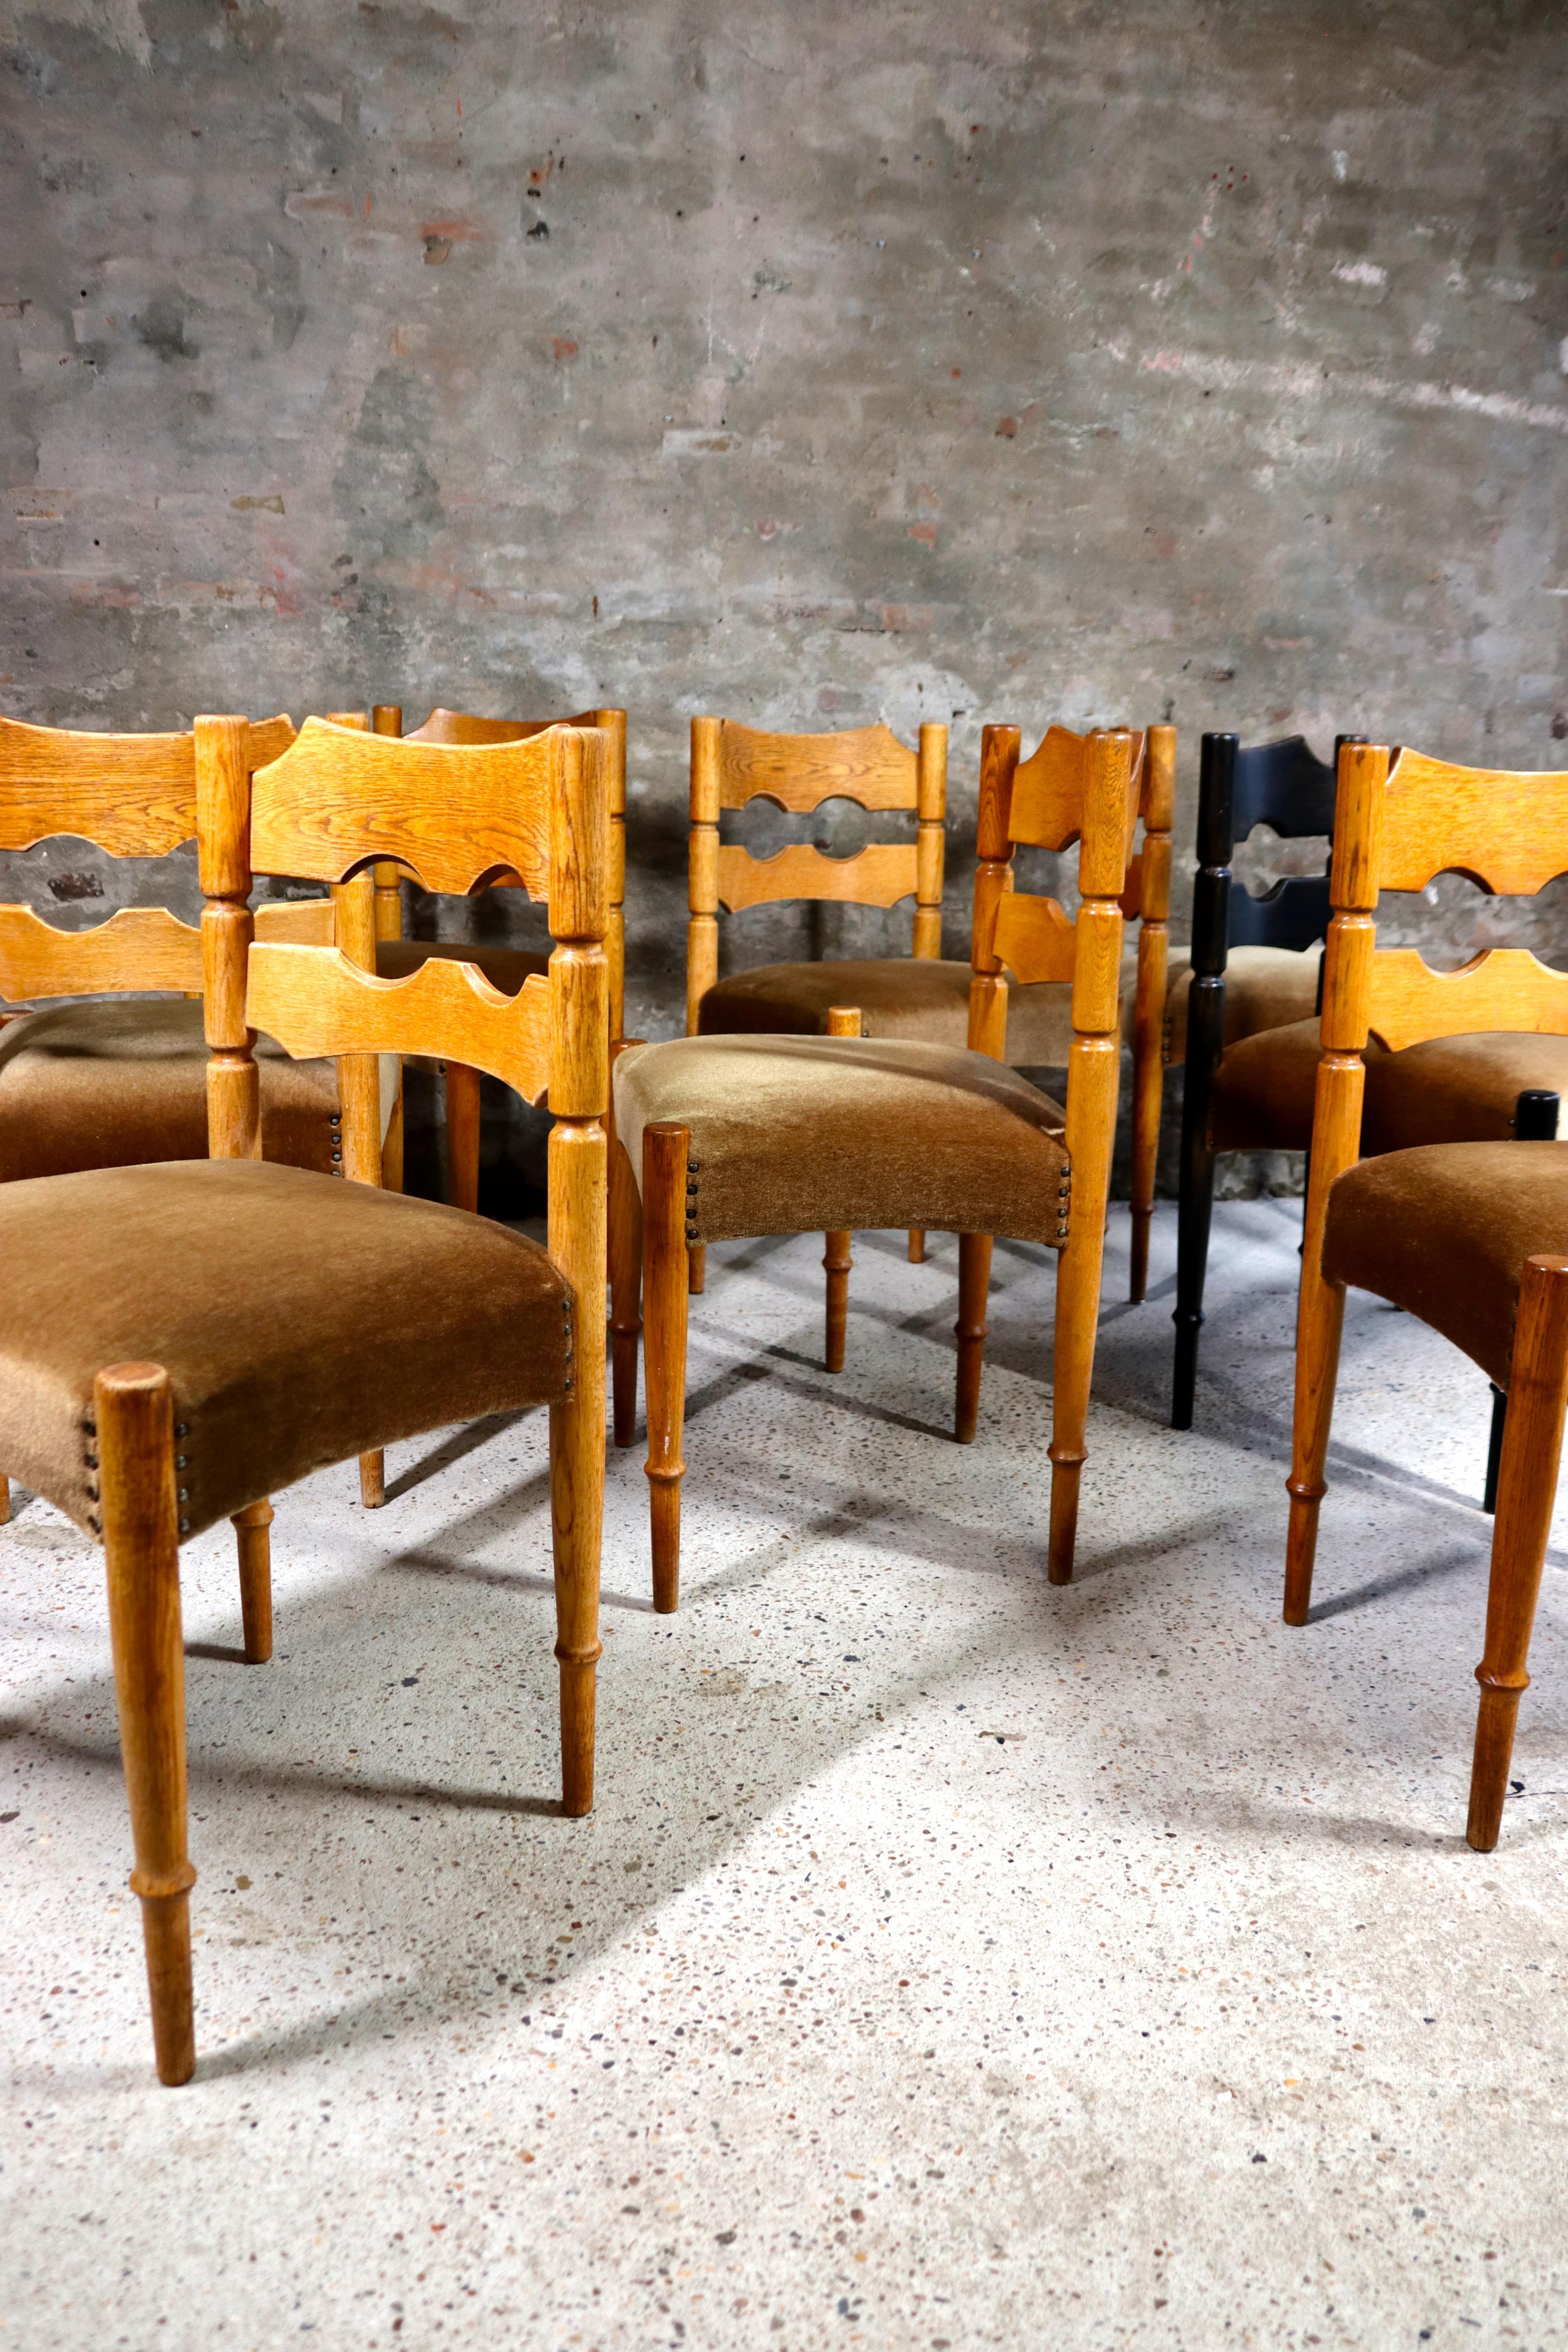 Ces chaises ont été conçues par Henning Kjaernulf dans les années 1960. Les chaises sont pour la plupart intactes et encore tout à fait originales. Il y a 7 chaises normales et 1 chaise a été peinte en noir. Ils sont tous en bon état général, avec